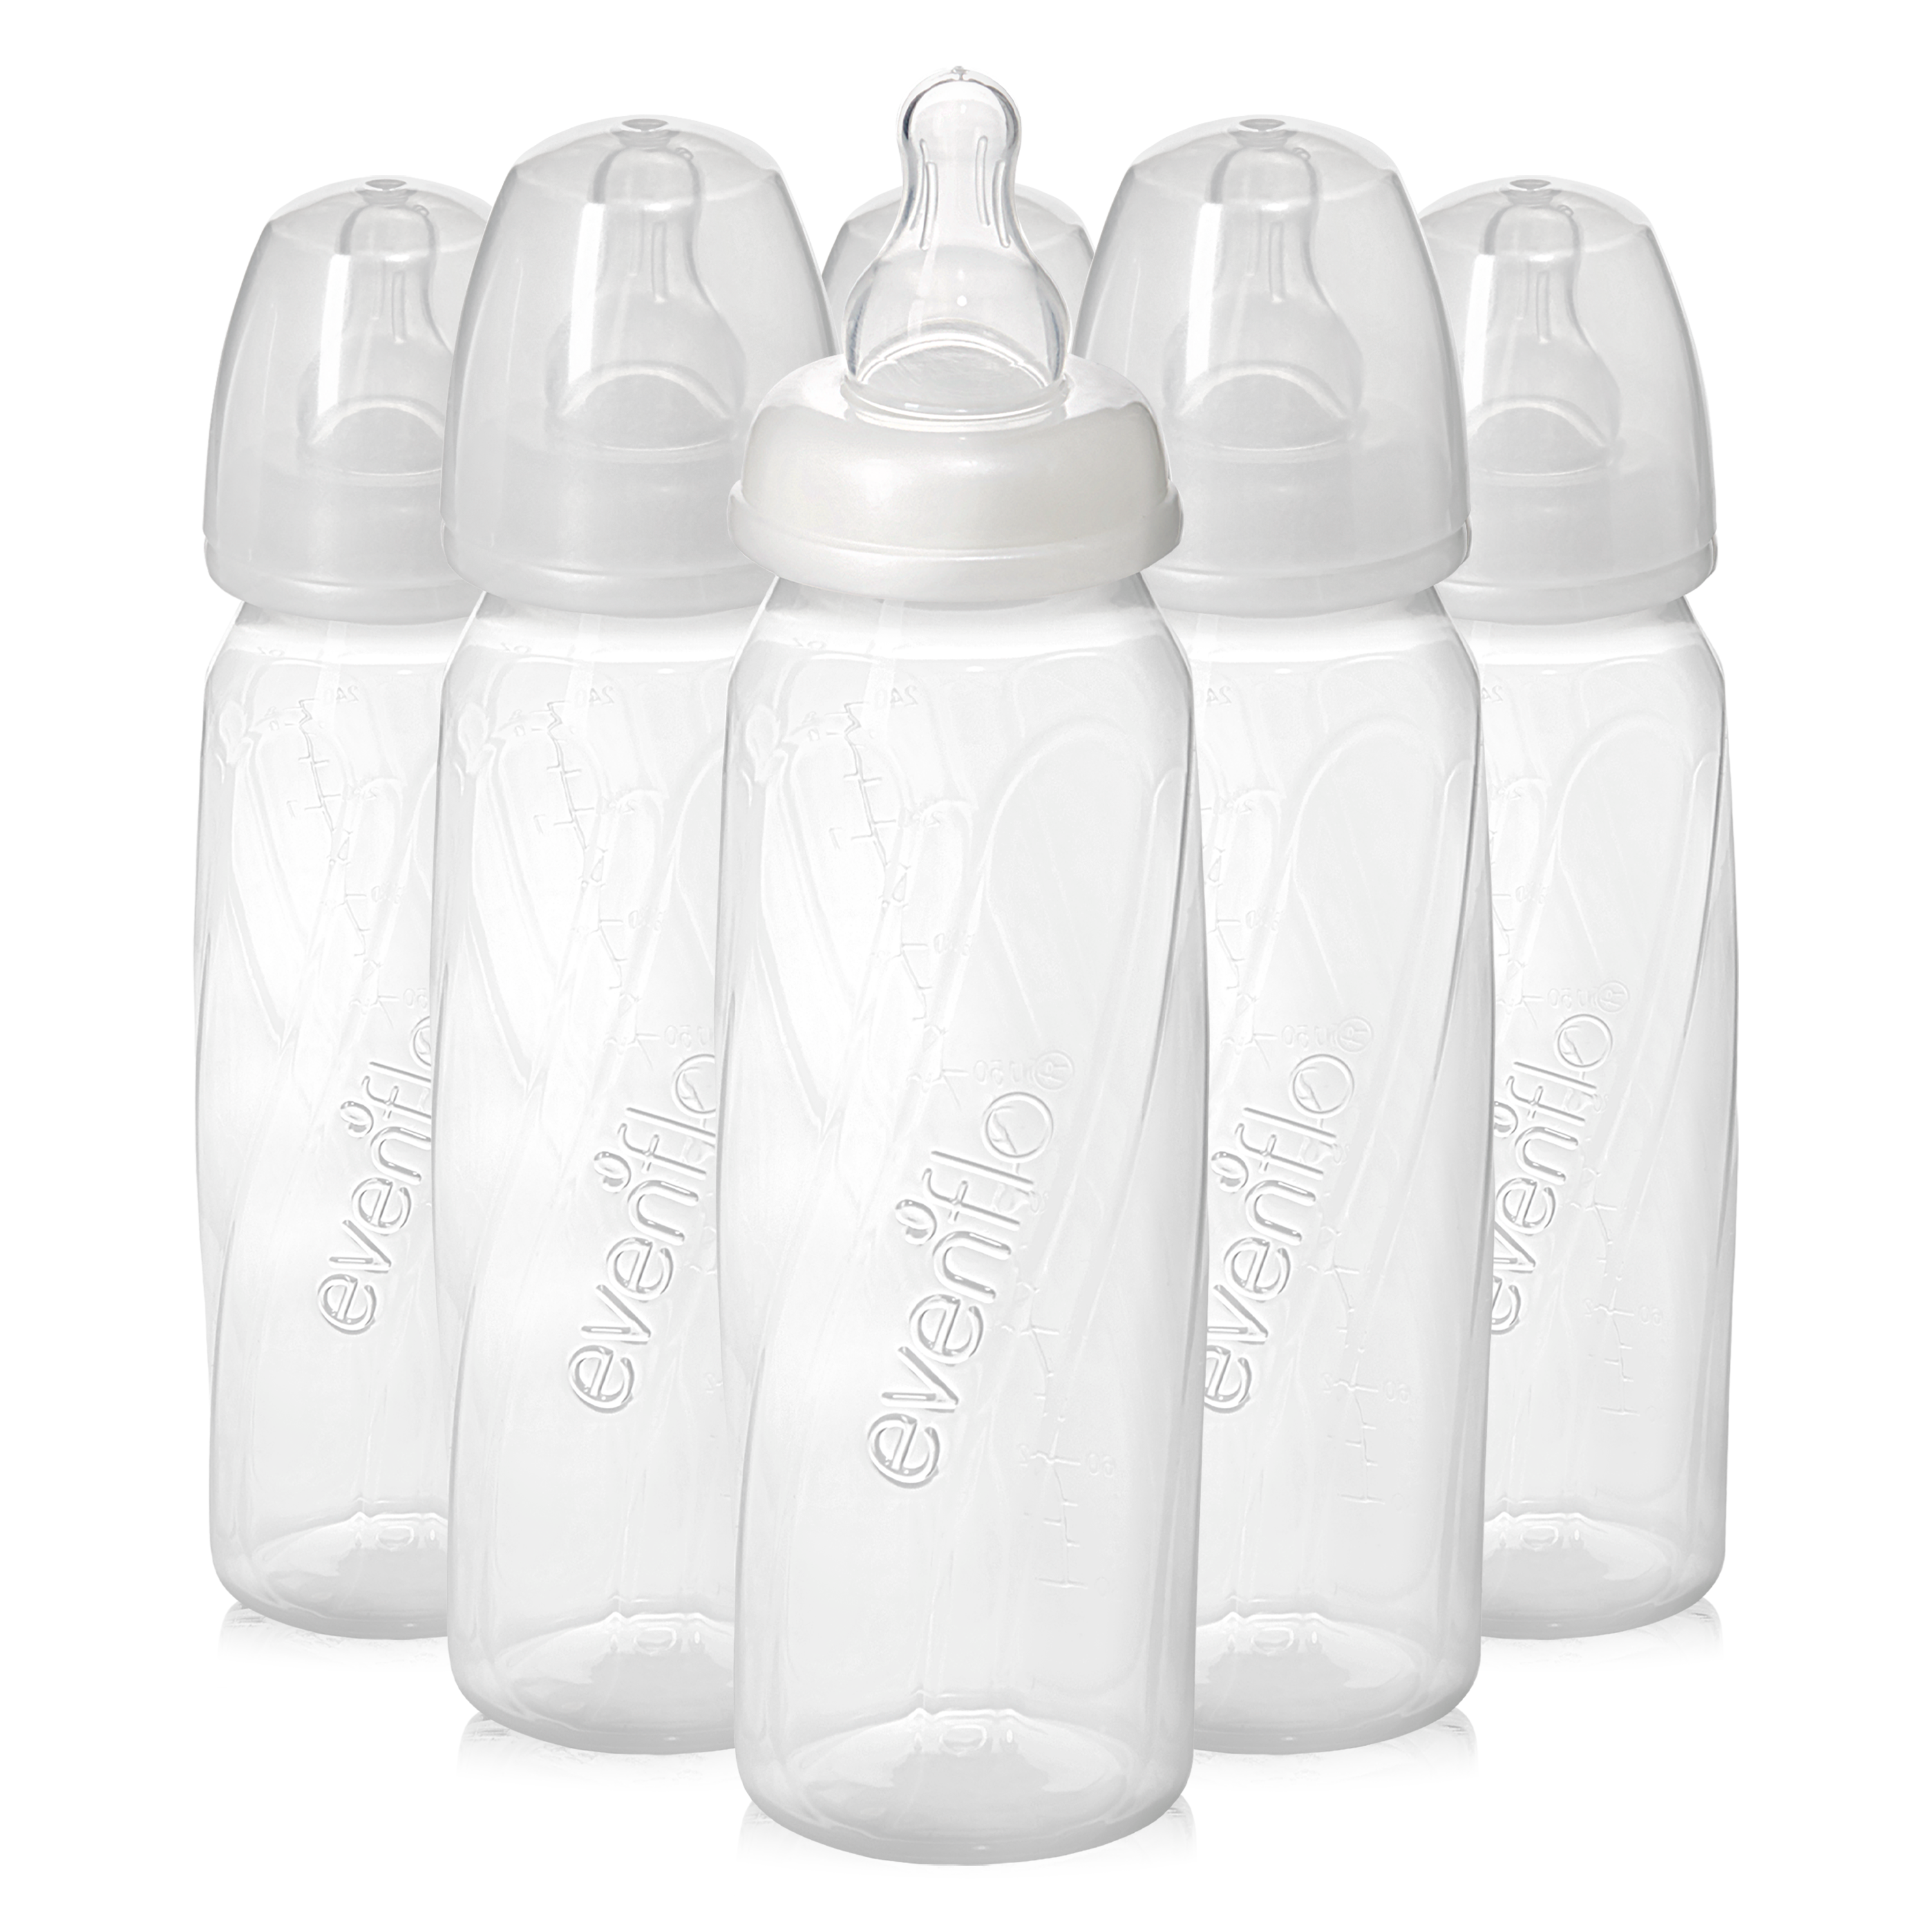 For the Best Glass Milk Bottles, Always Go for NewRay Bottles